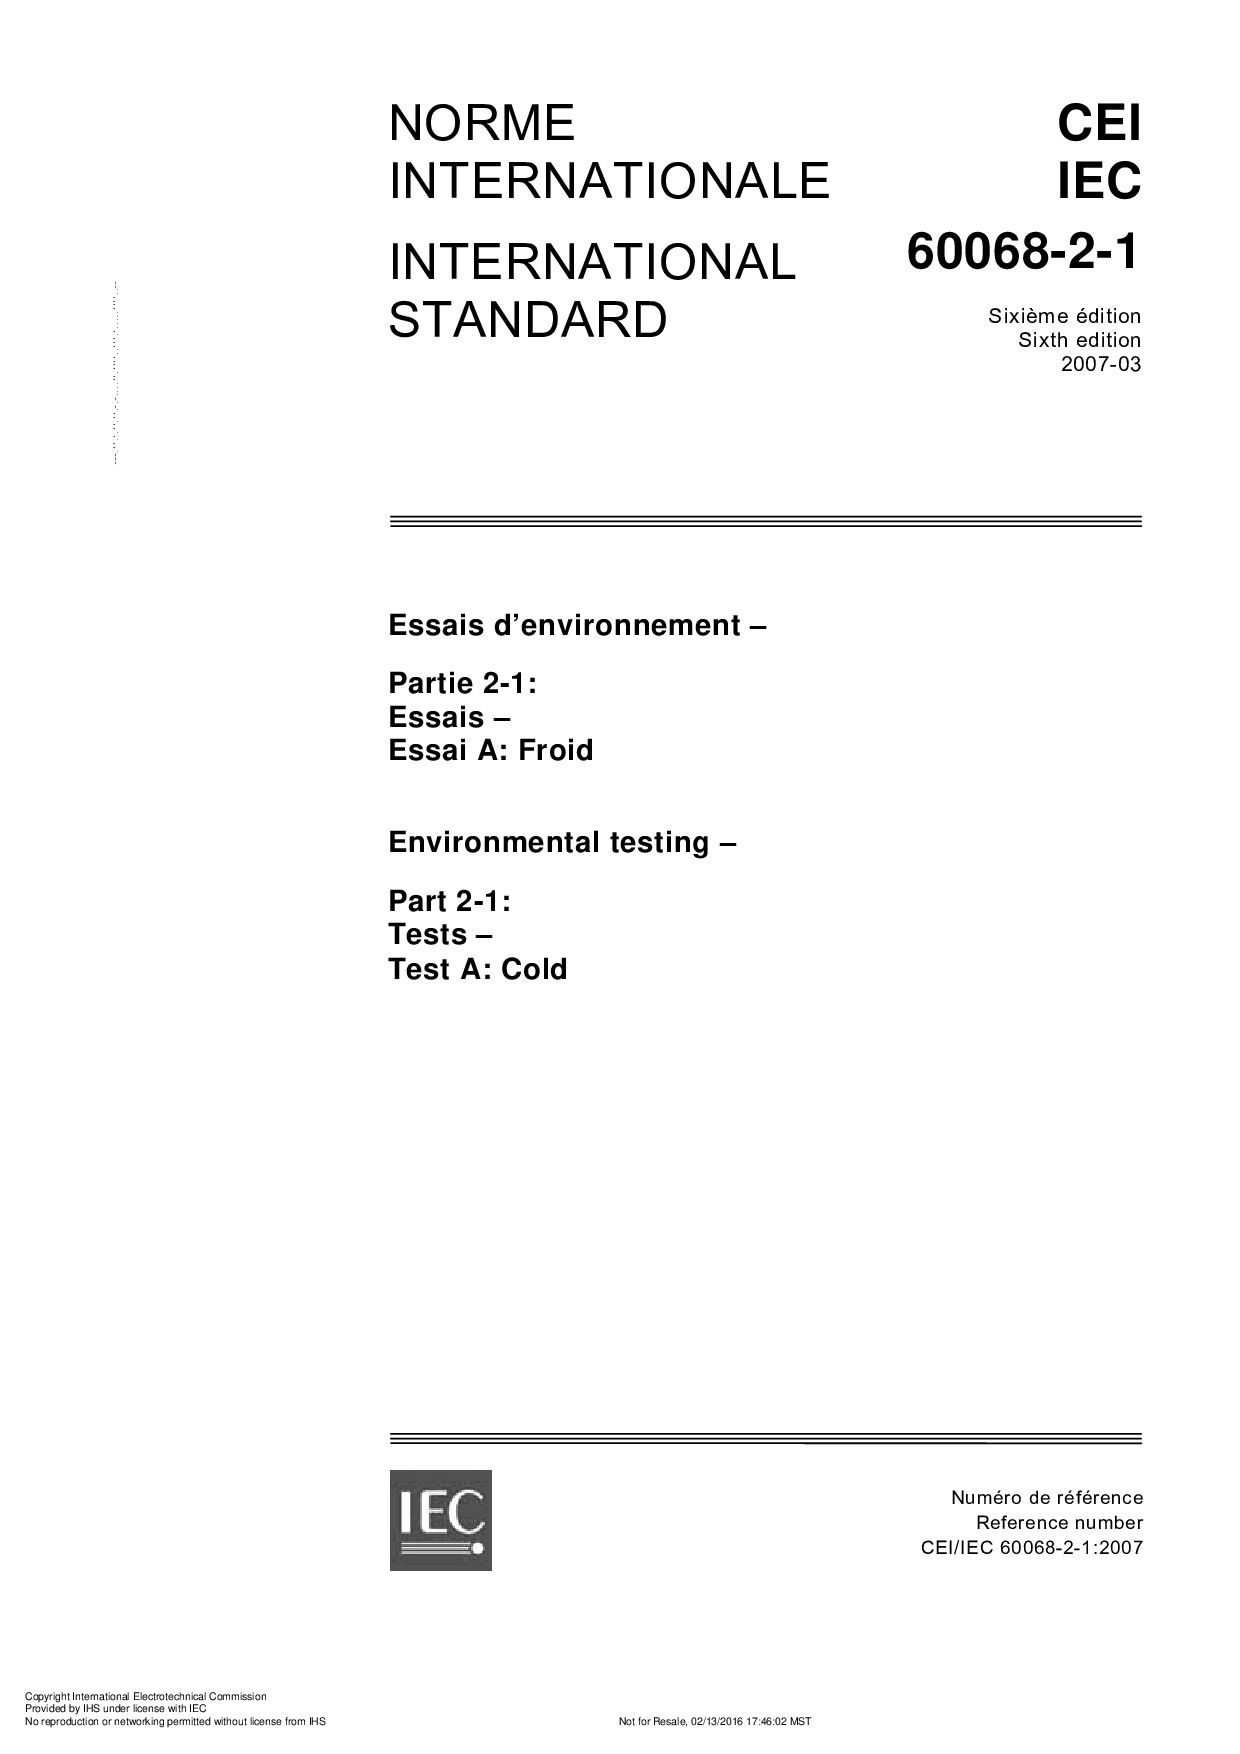 IEC 60068-2-1:2007